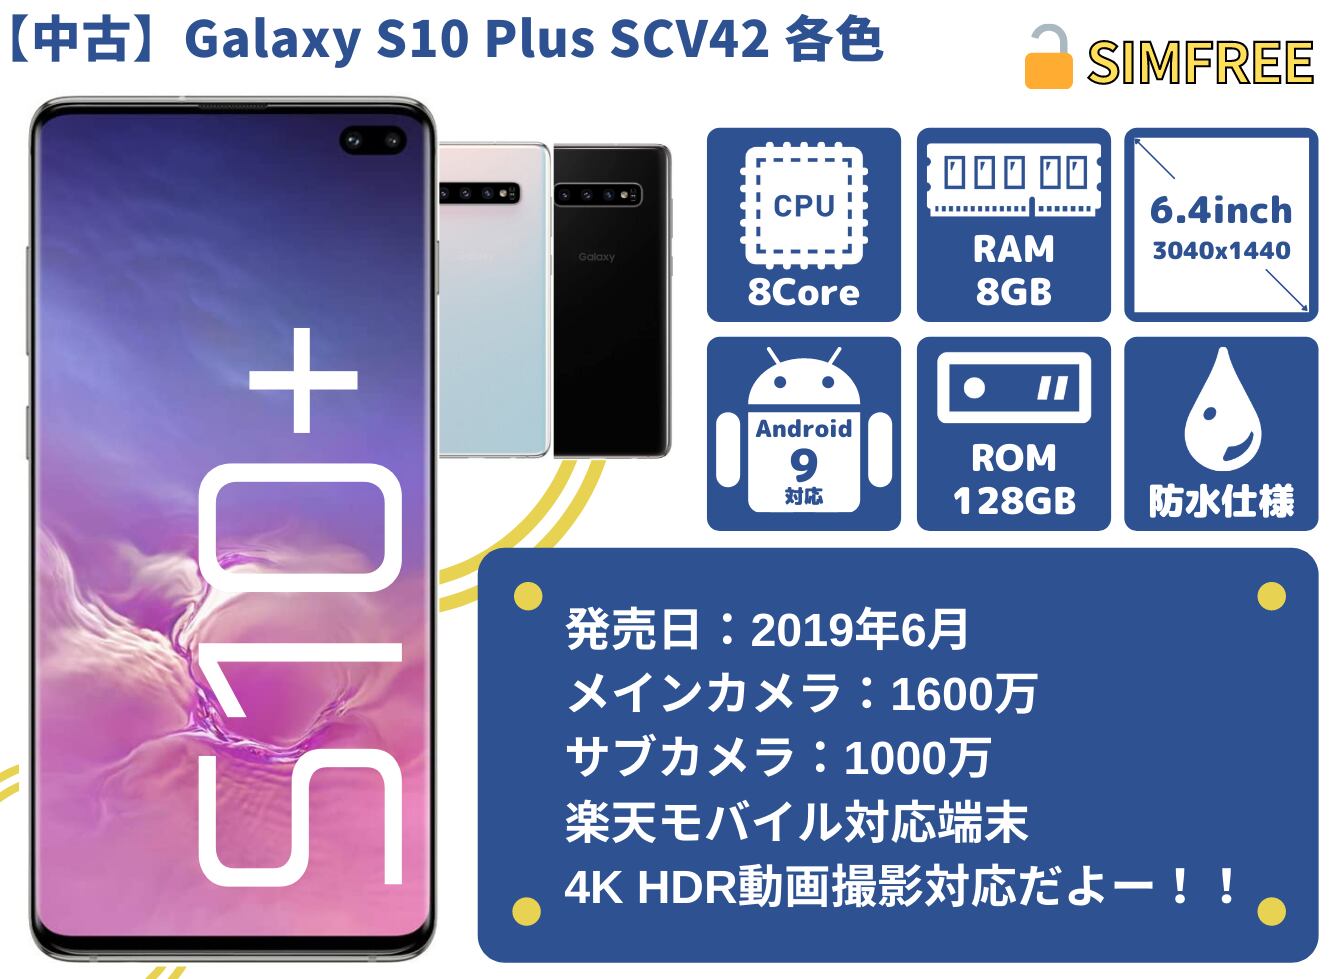 ◆R416 SIMフリー au Galaxy S10+ SCV42 ホワイト美品